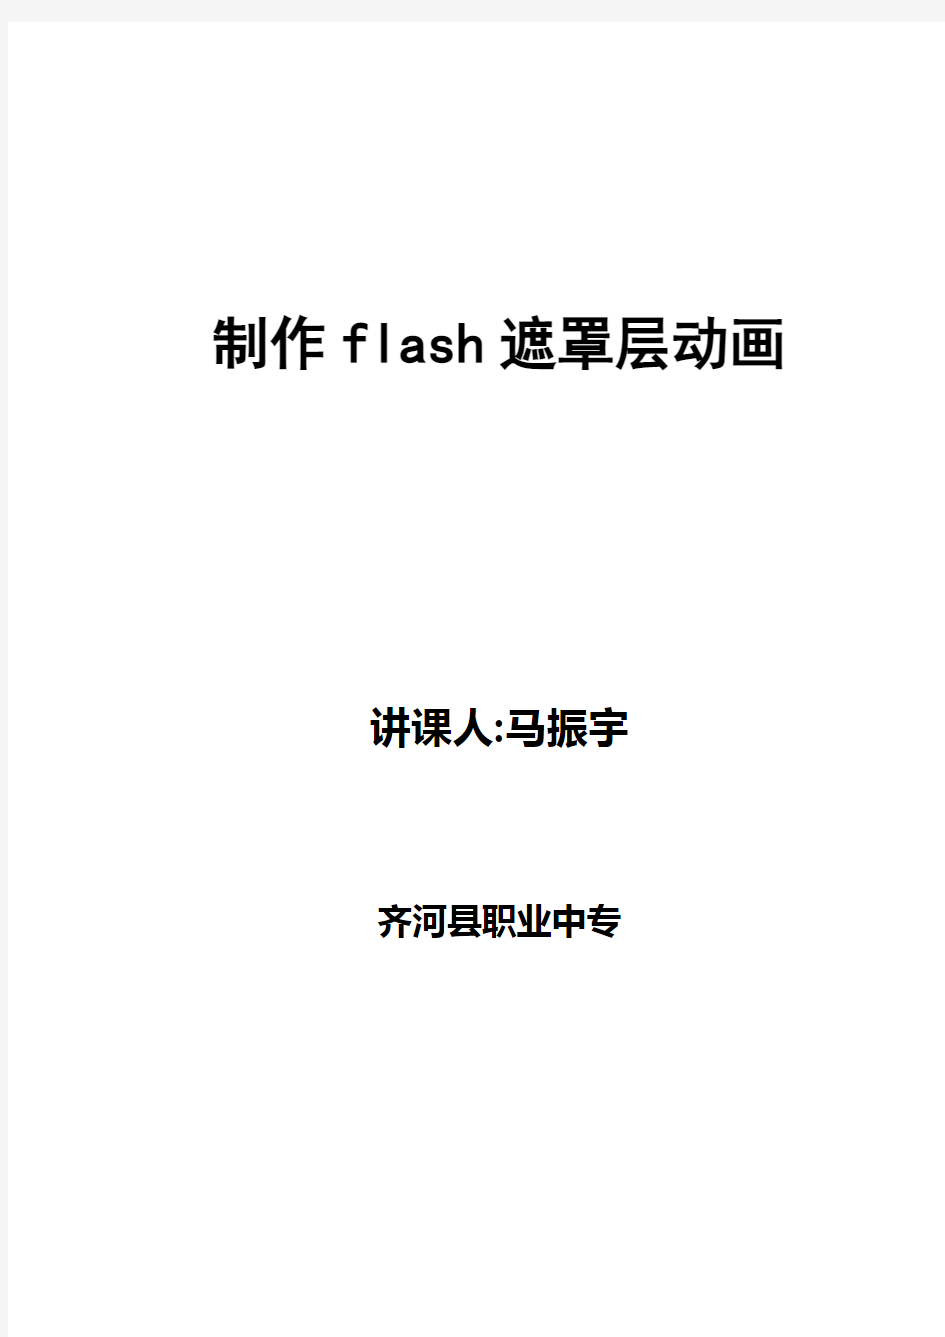 《制作flash遮罩层动画》教案1